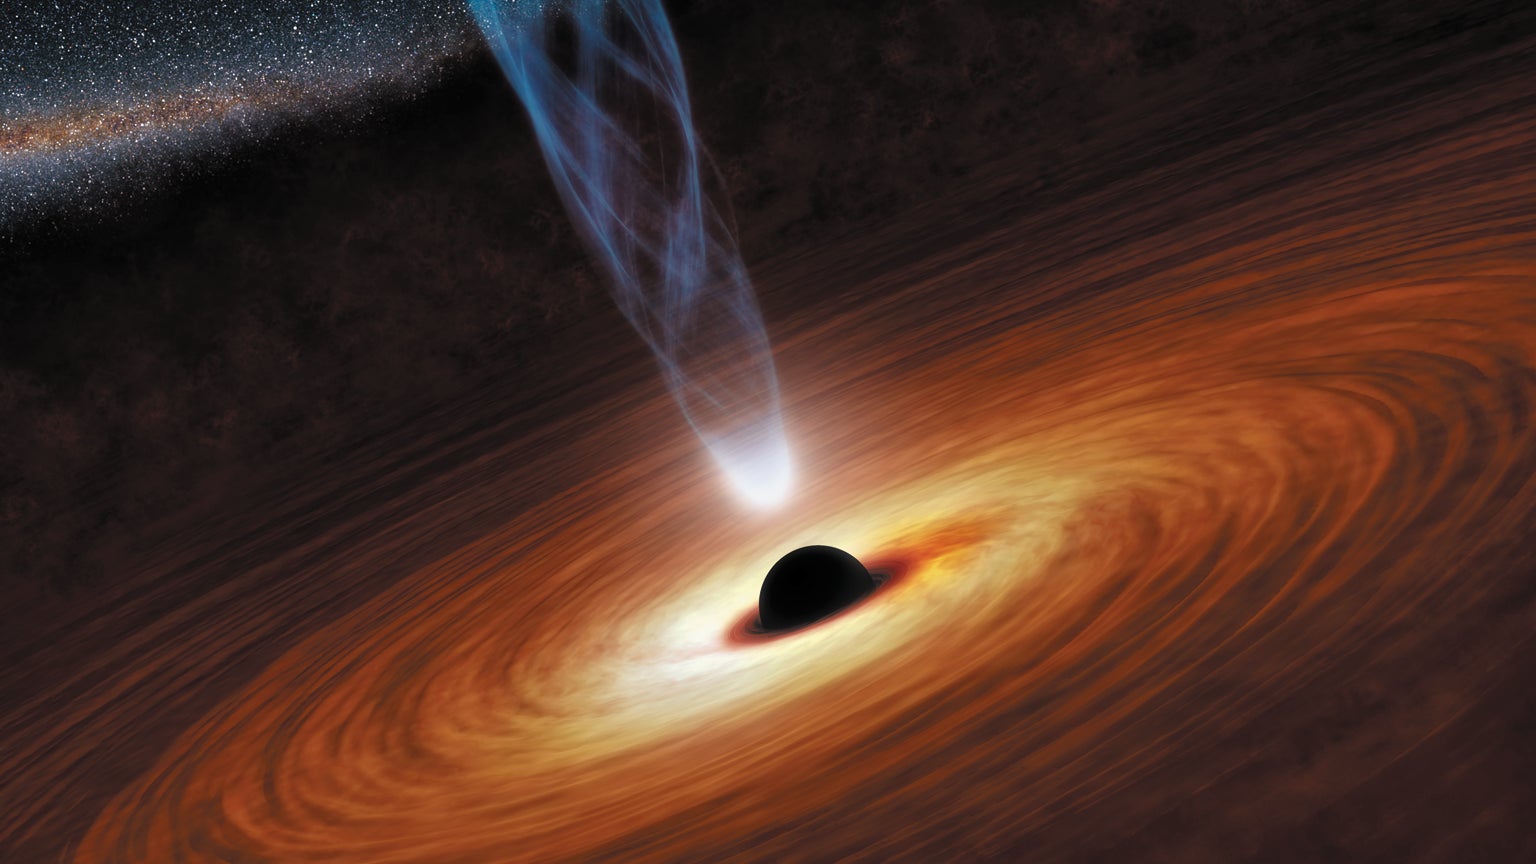 supermassive black holes feasting on gas.